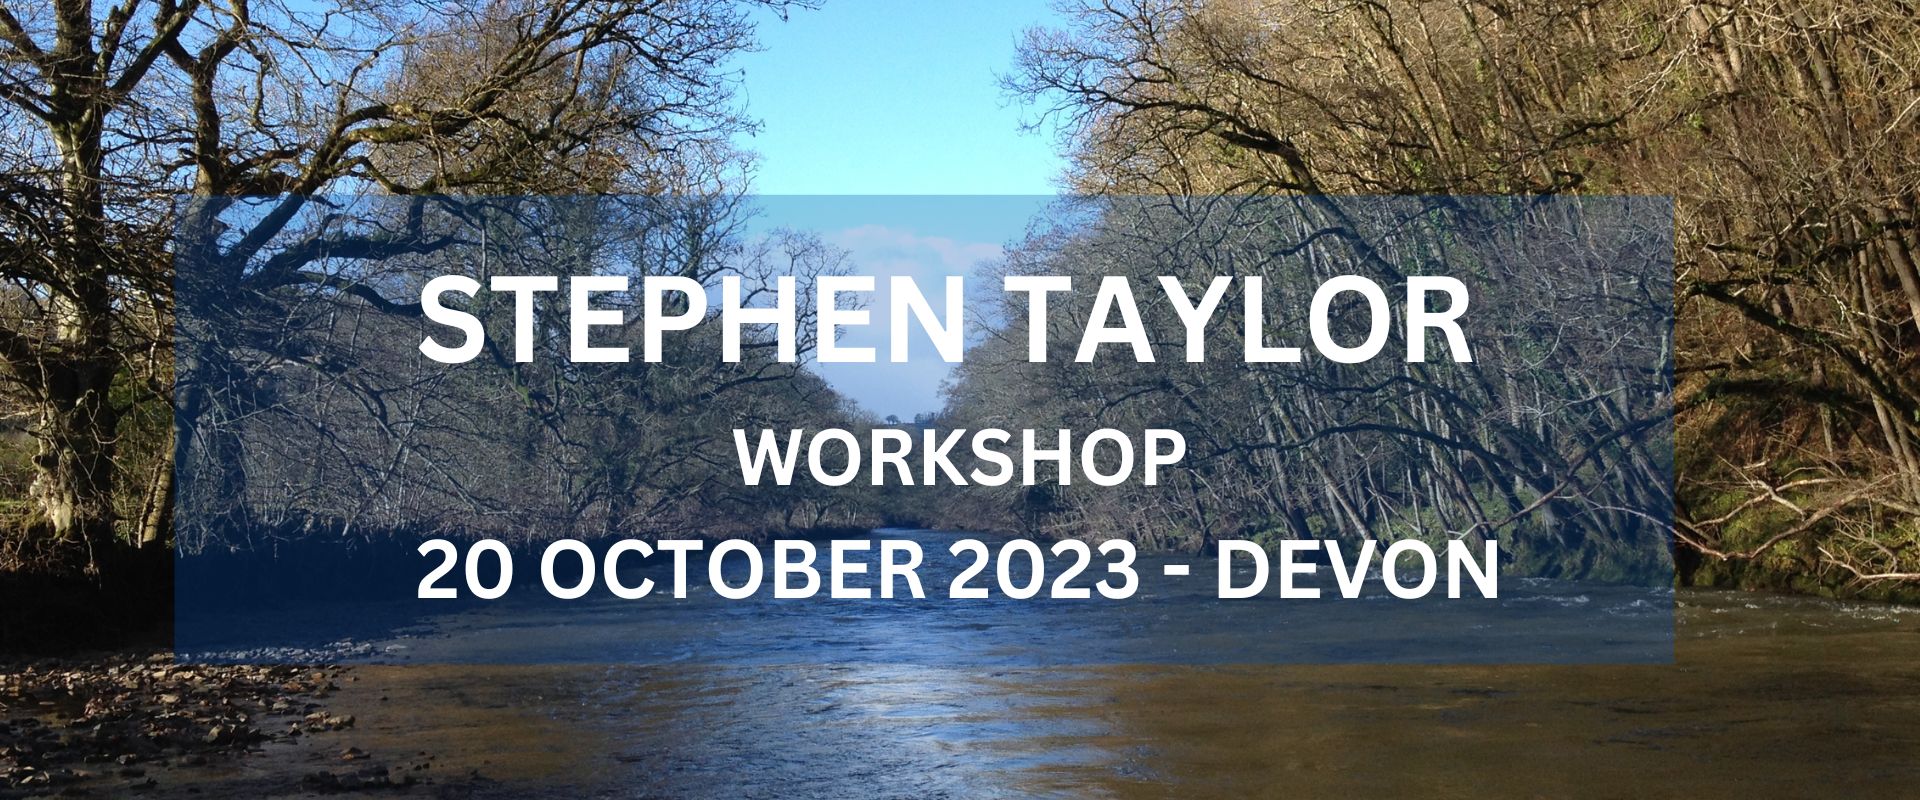 Stephen Taylor Workshop October 2023 - Devon